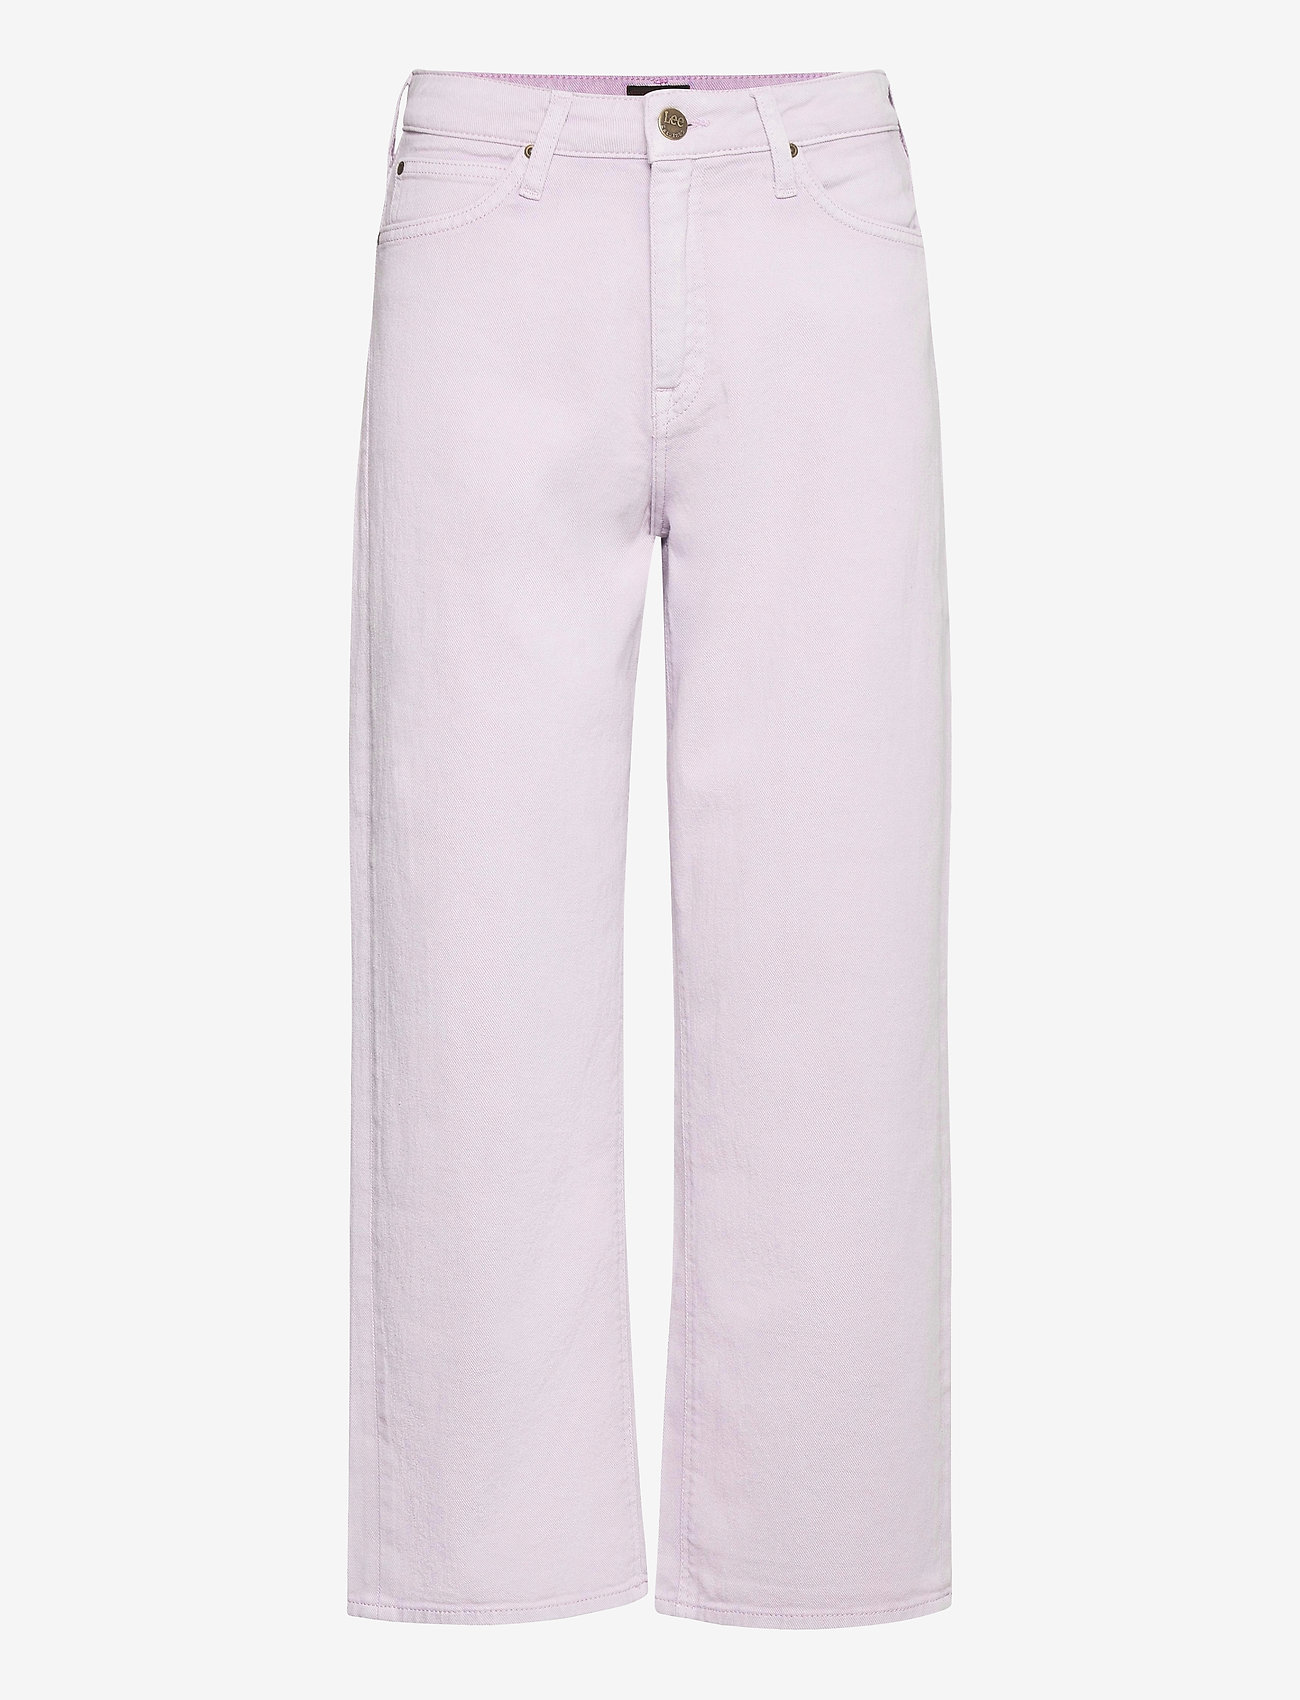 Lee Jeans - WIDE LEG - jeans met wijde pijpen - lilac - 0